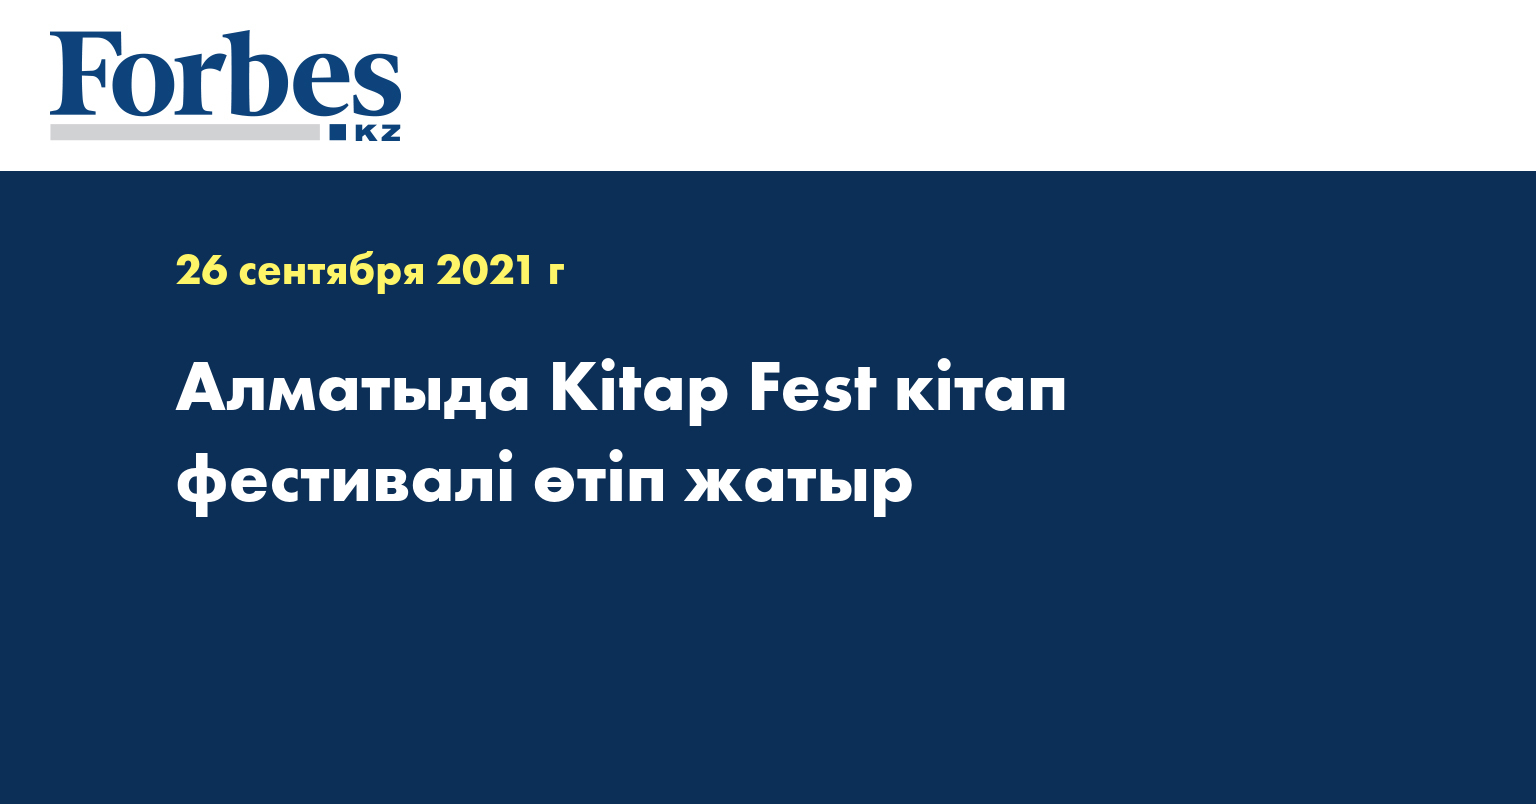 Алматыда Kitap Fest кітап фестивалі өтіп жатыр